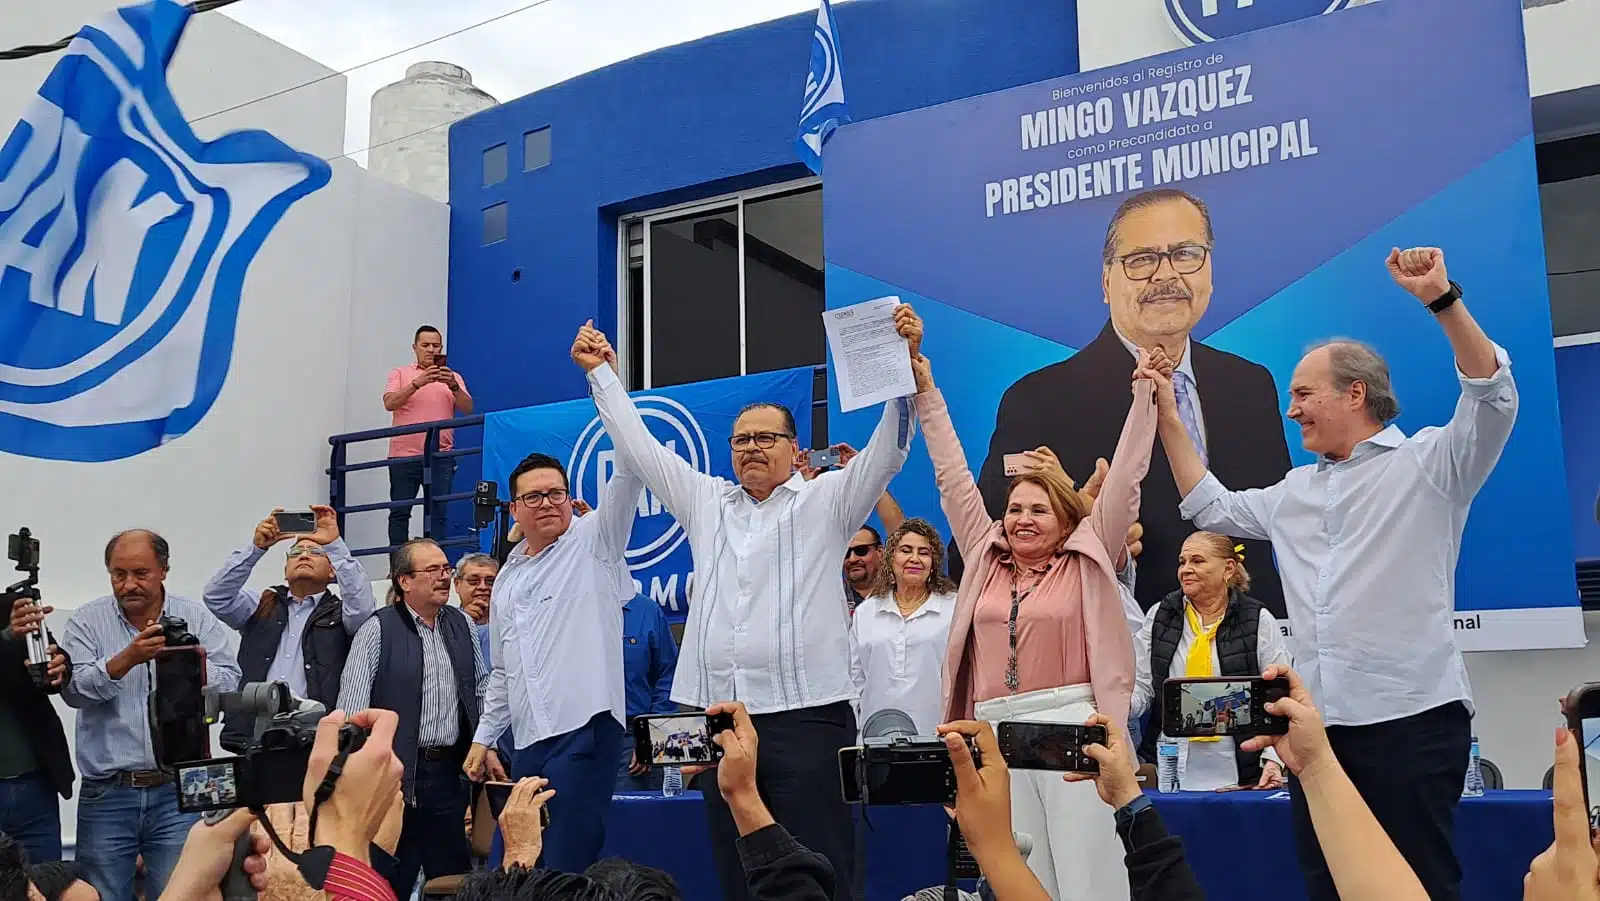 José Domingo “Mingo” Vázquez Márquez se registró formalmente como precandidato a presidente municipal de Ahome por el PAN.